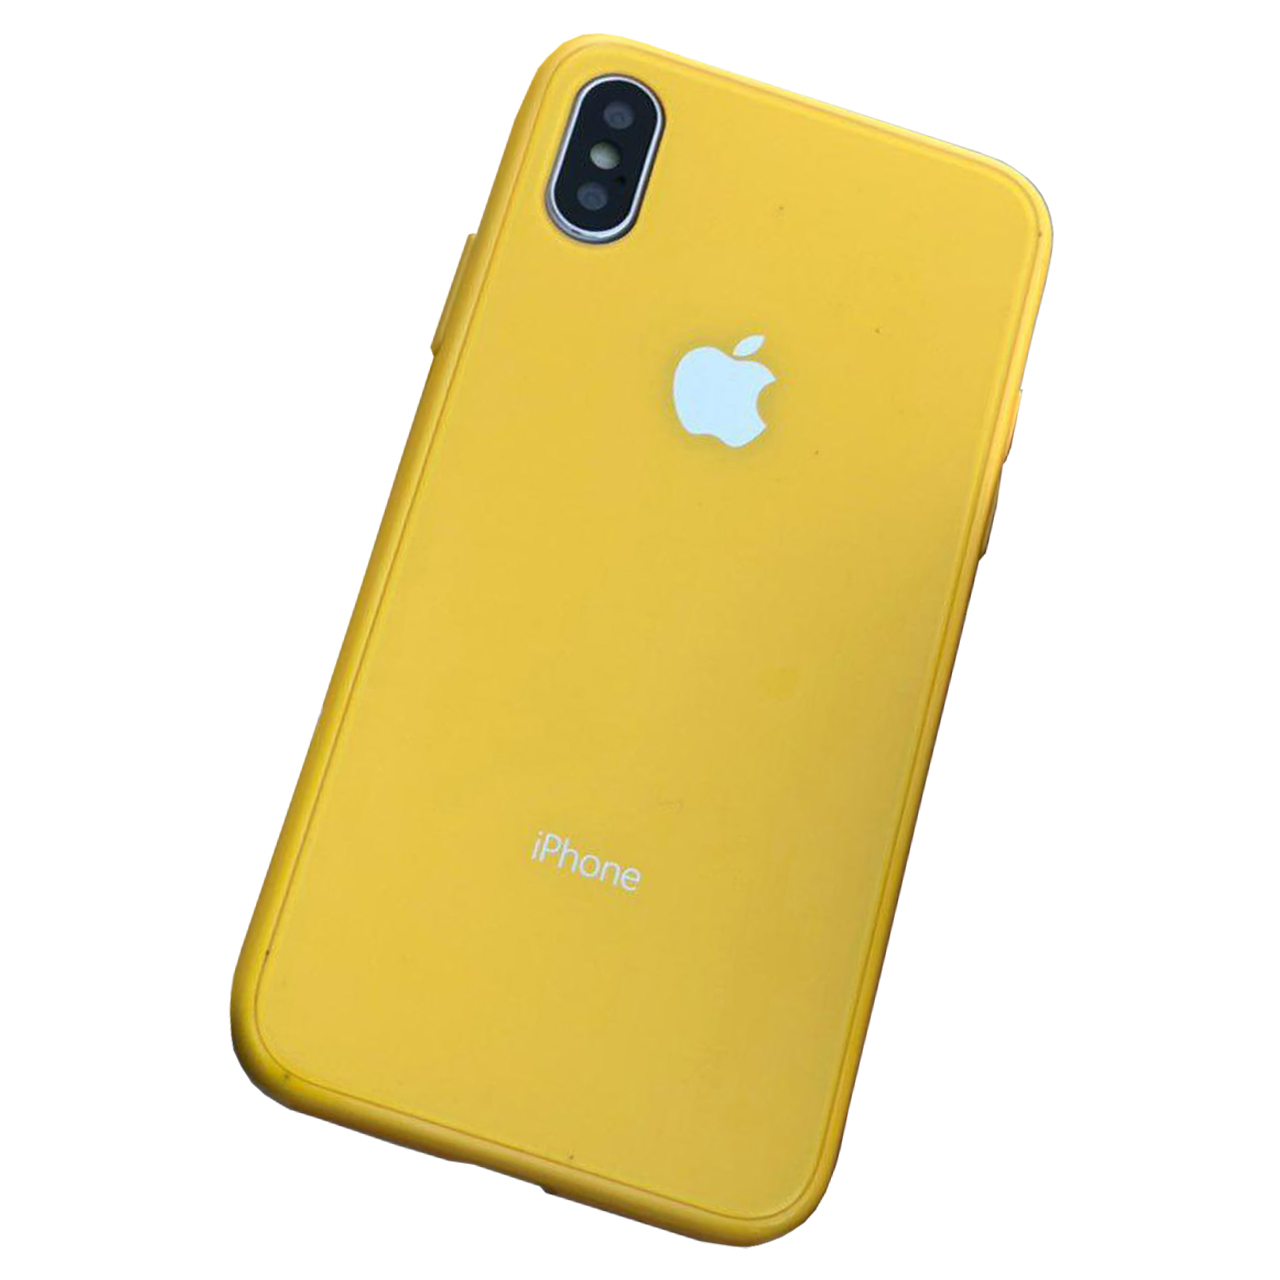 کاور مای کیس مدل GlassBack مناسب برای گوشی اپل iPhone X/XS